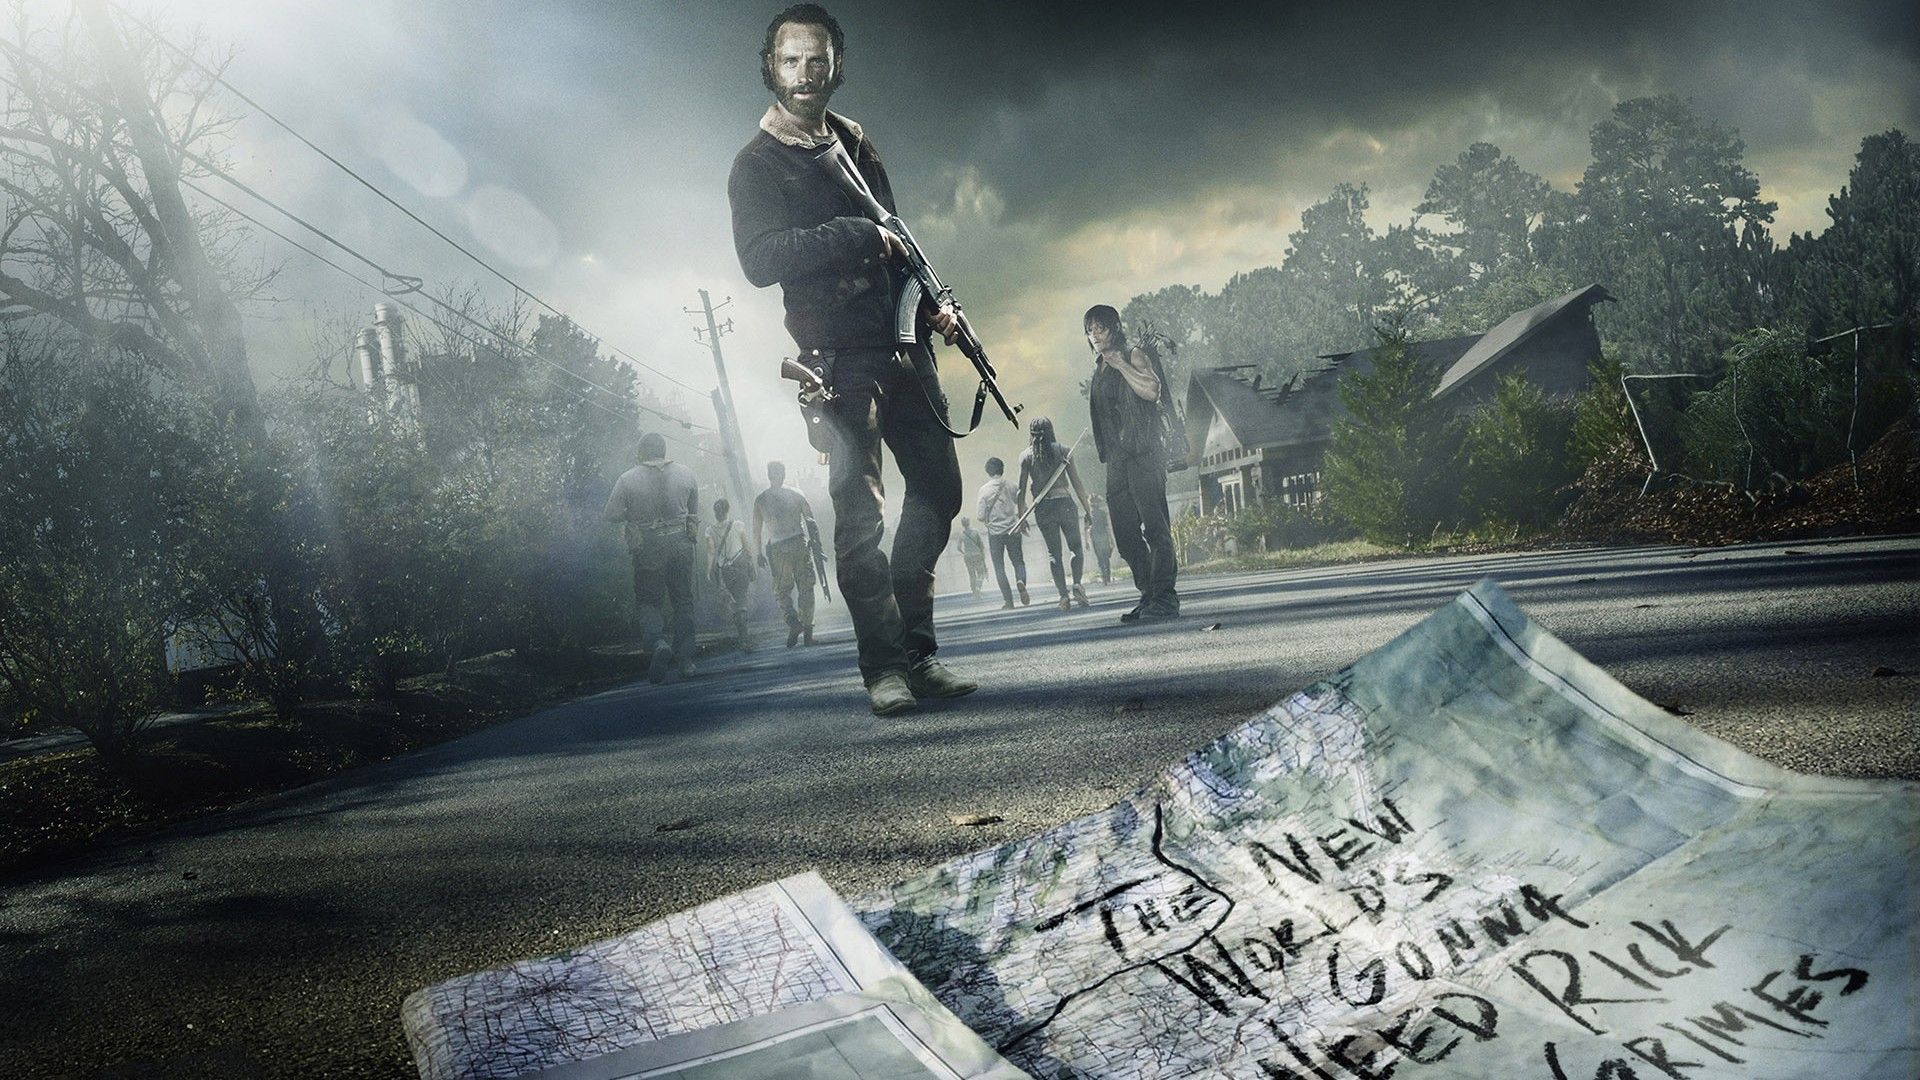 The Walking Dead Season 5 HD Wallpaper - StylishHDWallpapers